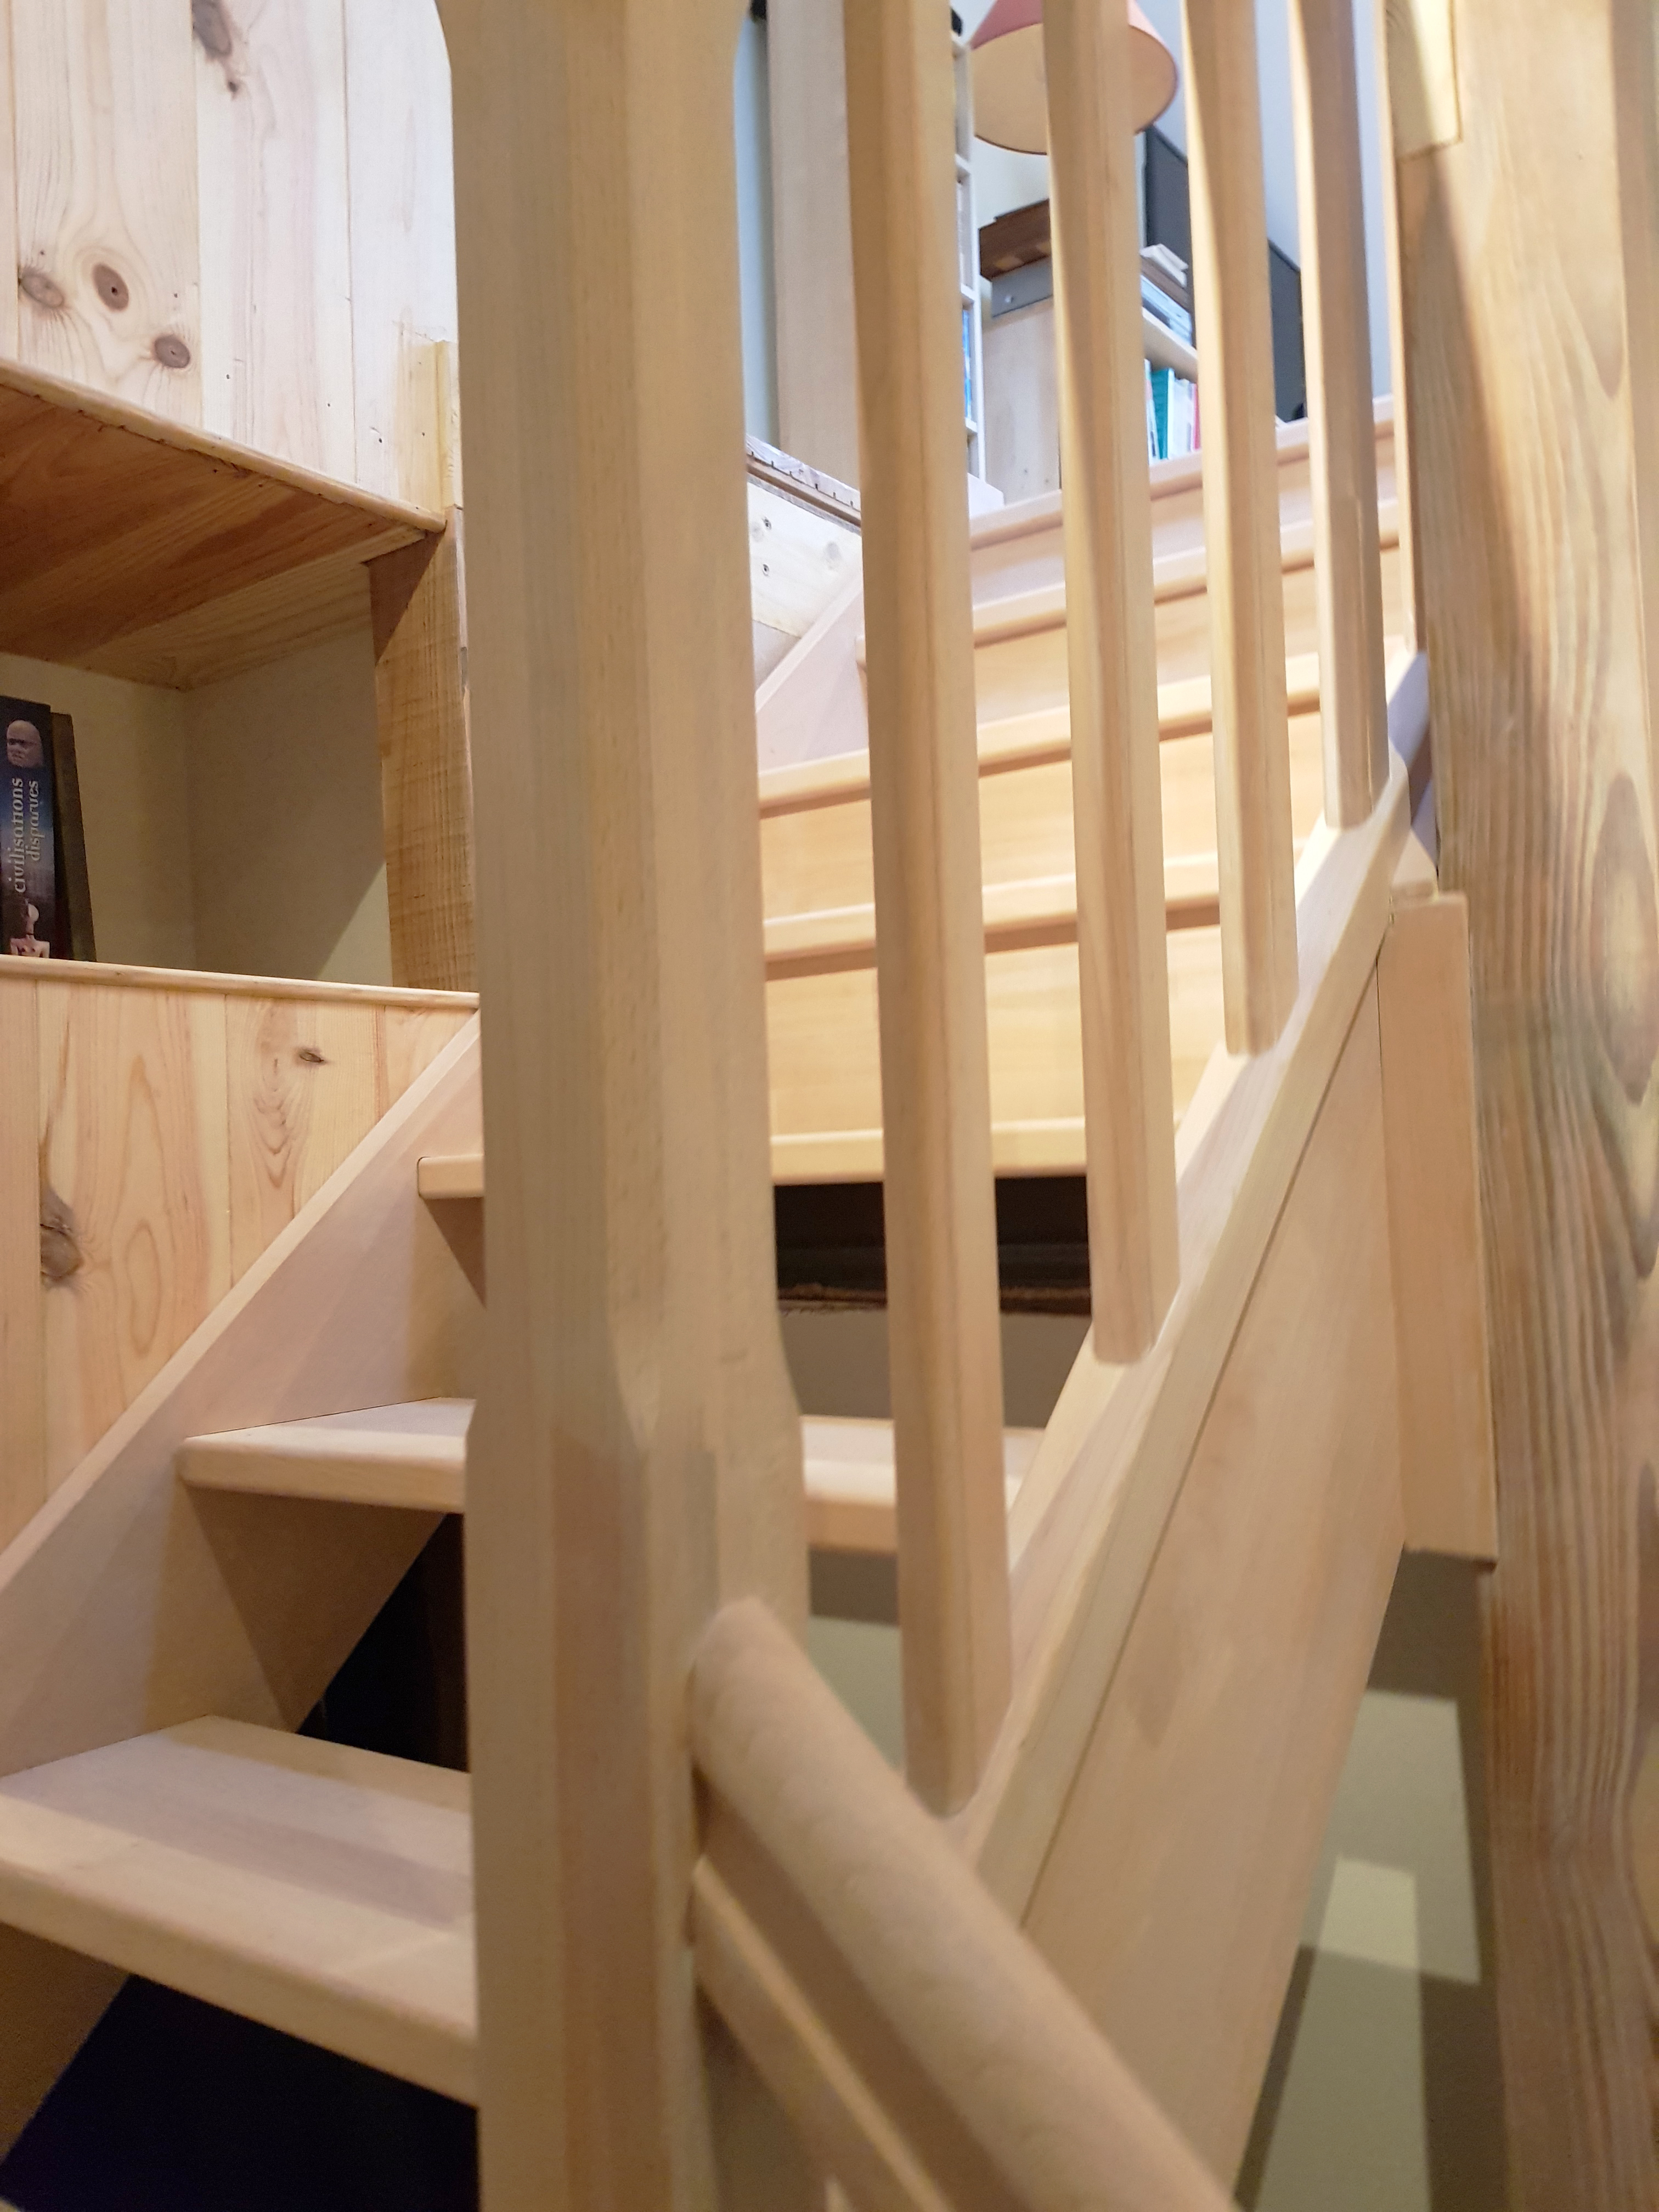 Escalier traditionnel en bois Forme : escalier Quart tournant milieu à droite